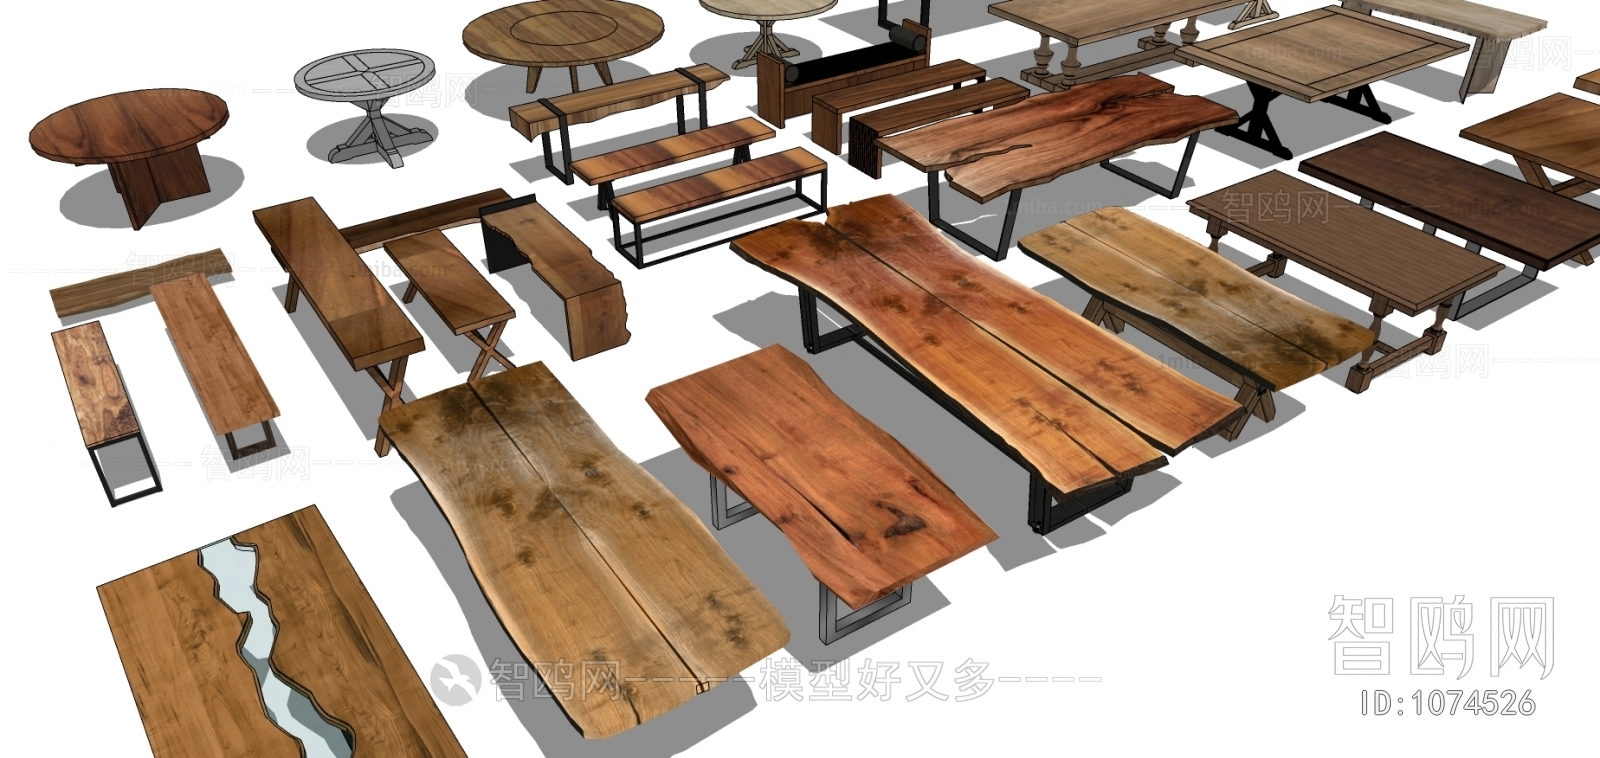 中式木制家具木桌木椅